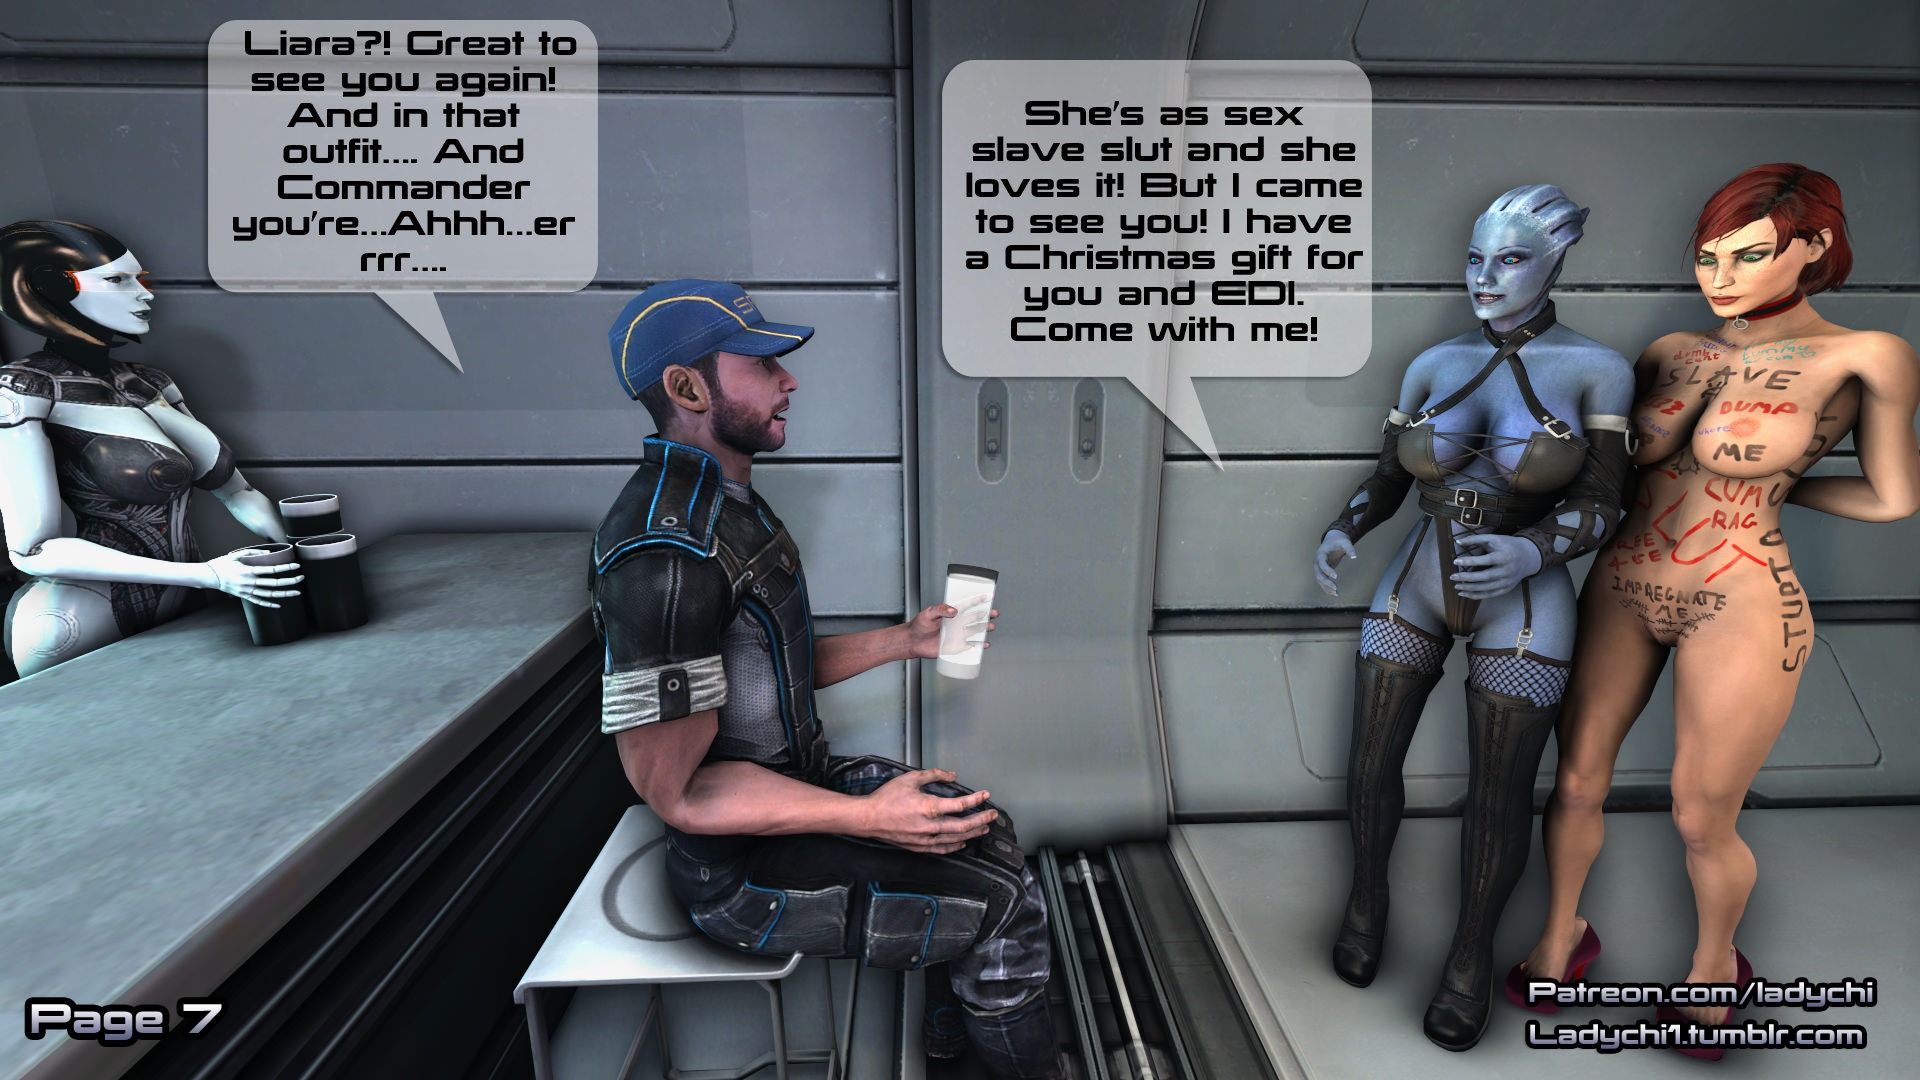 Liara X-Mass Gifts! Ladychi (Mass Effect) page 12